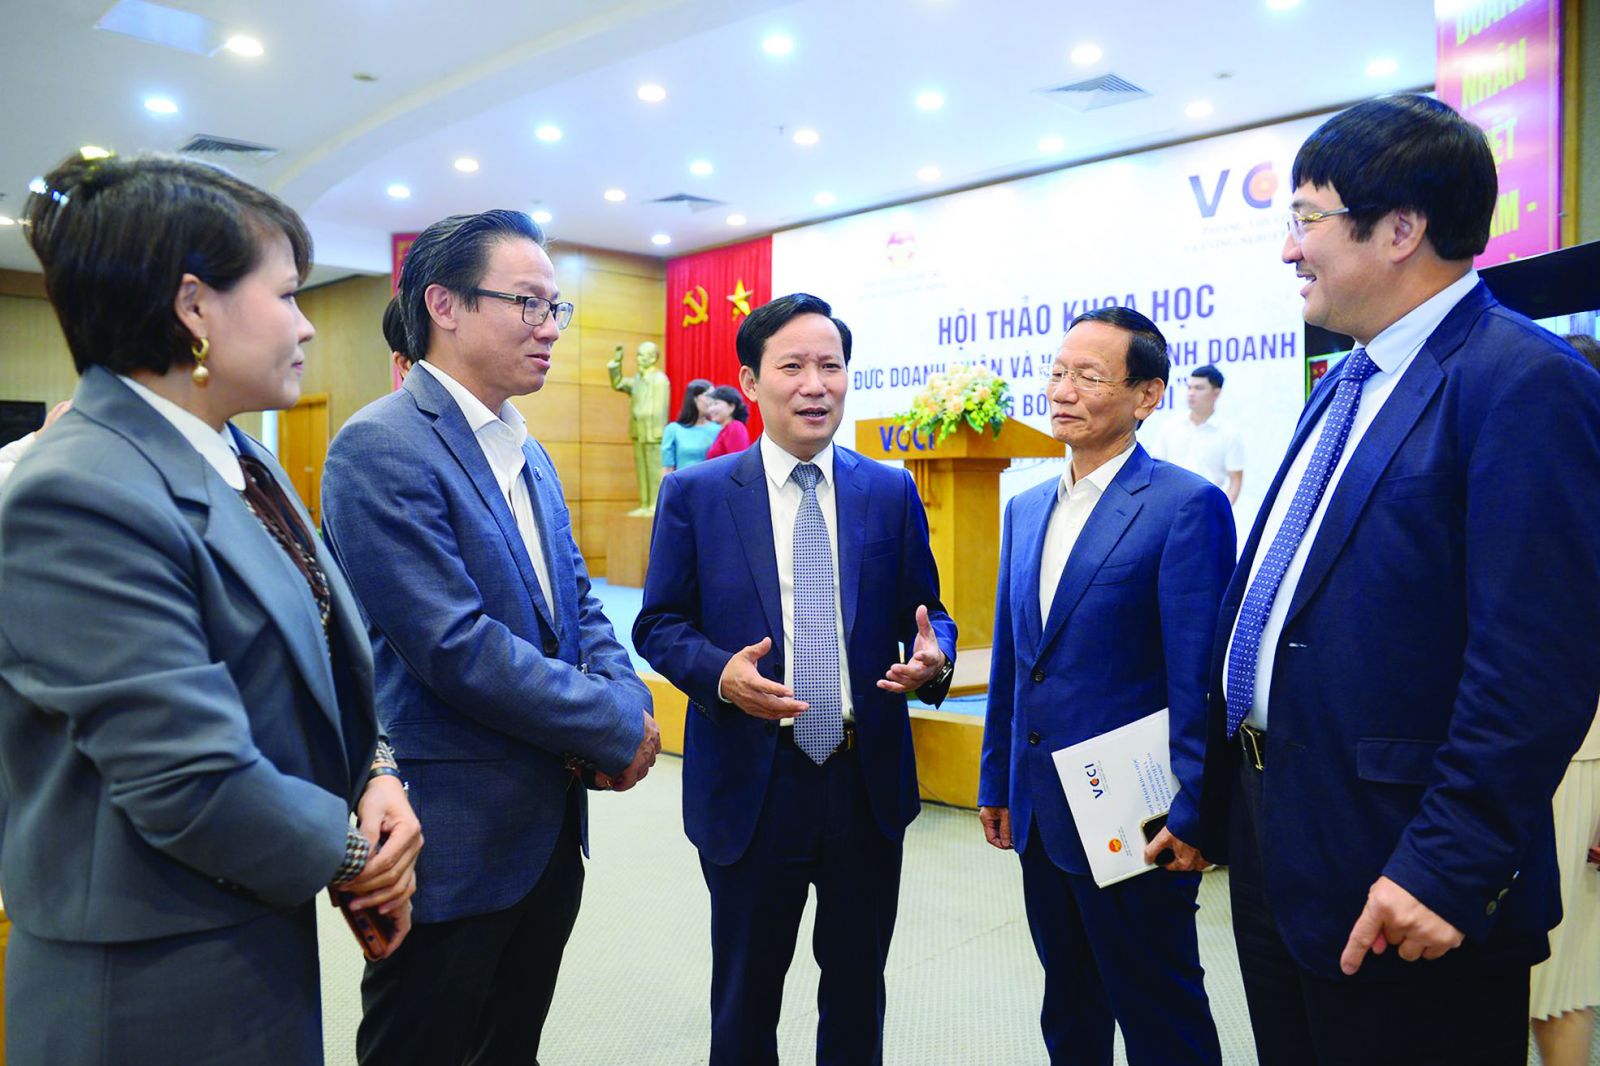  Chủ tịch VCCI Phạm Tấn Công trao đổi với các doanh nhân tại Hội thảo khoa học “Đạo đức doanh nhân và văn hóa kinh doanh Việt Nam trong bối cảnh mới” 